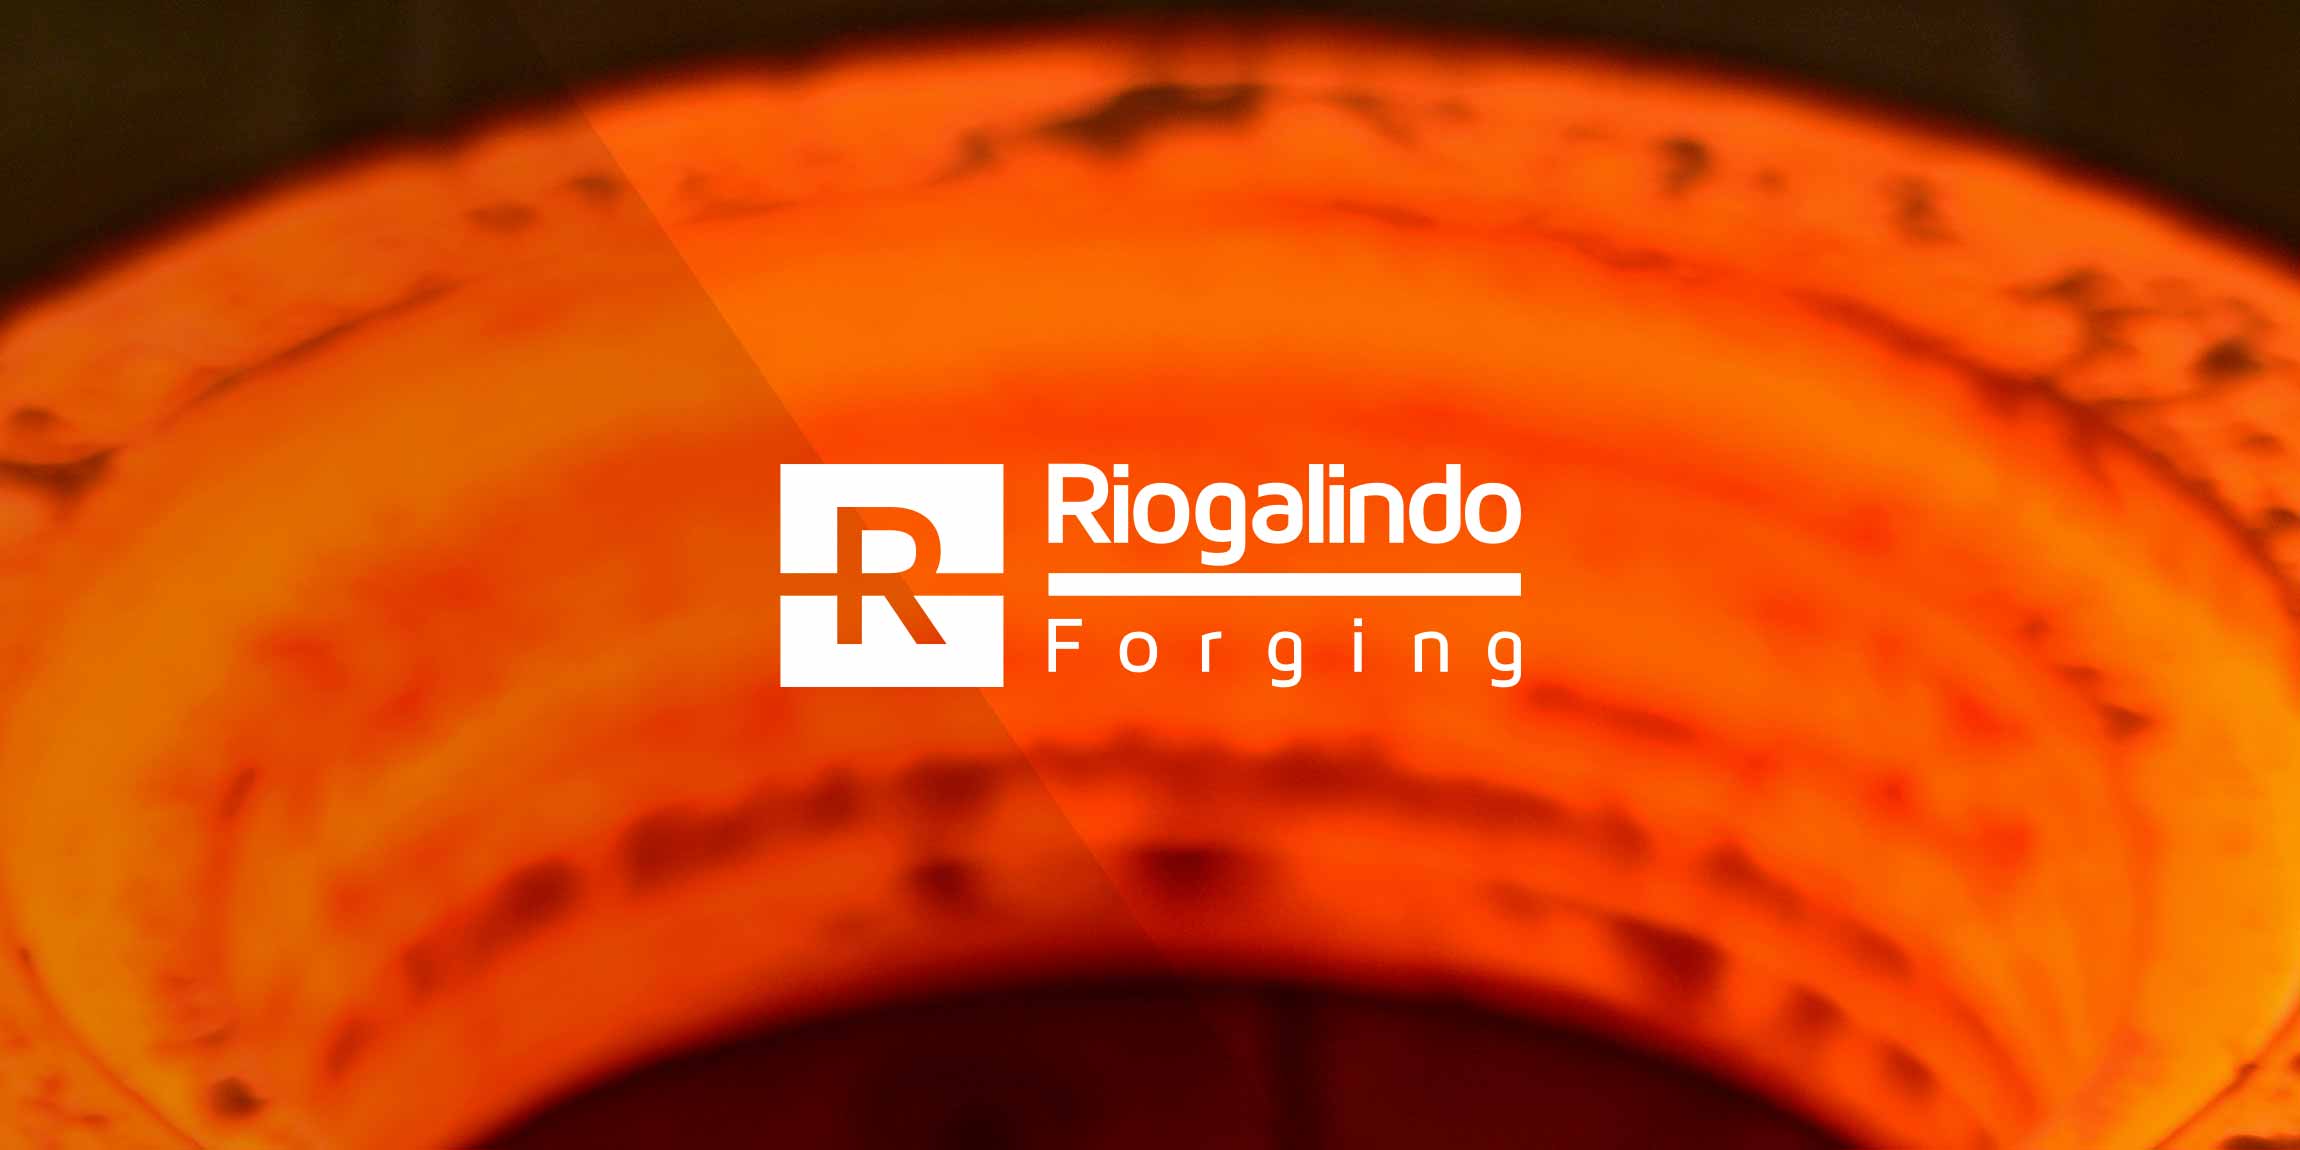 Riogalindo Forging